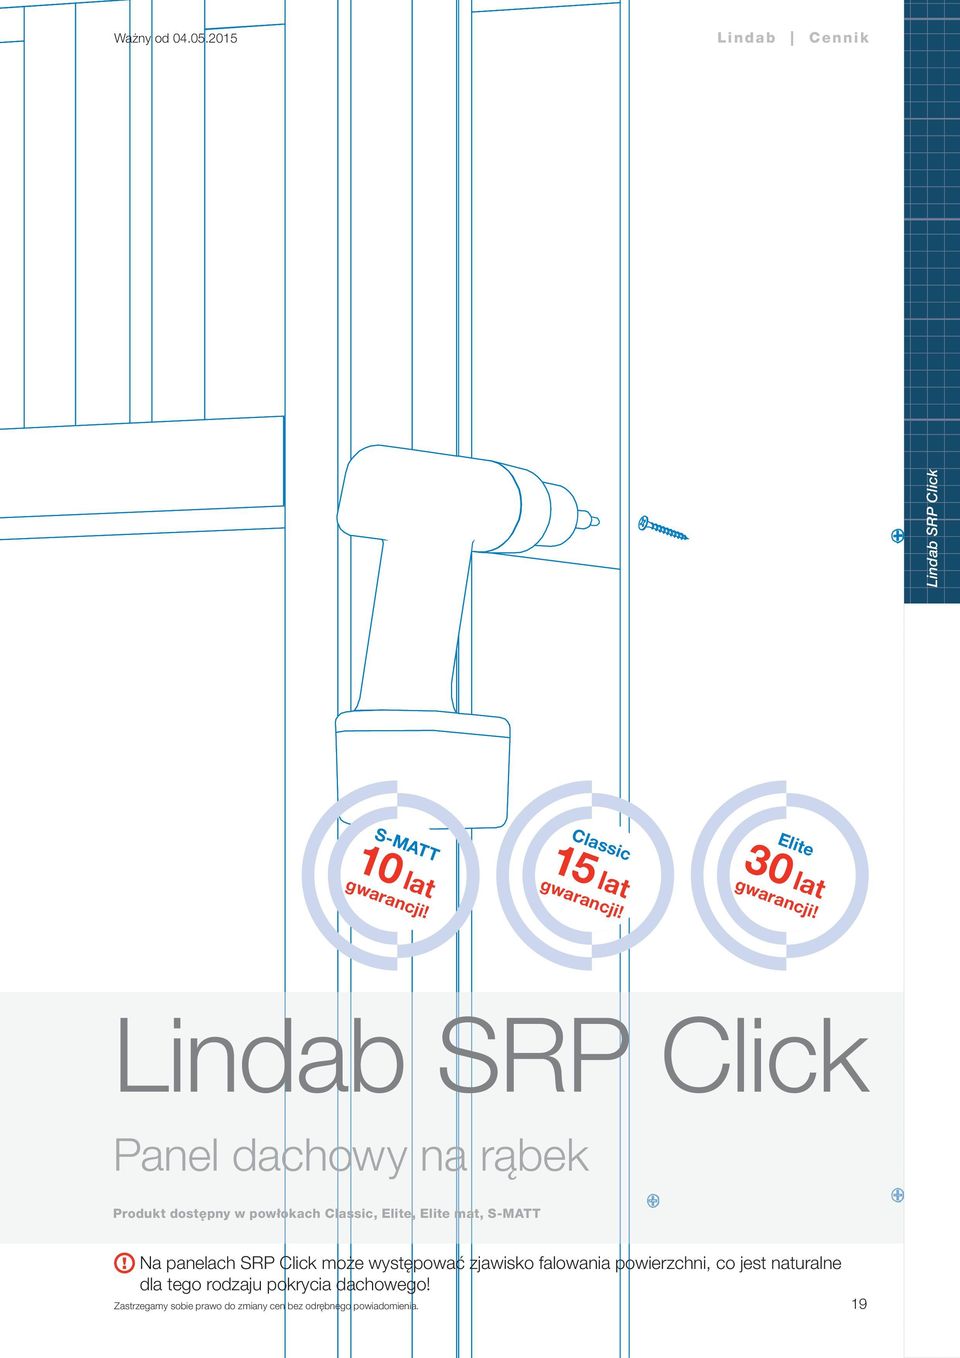 Lindab SRP Click Panel dachowy na rąbek Produkt dostępny w powłokach Classic,